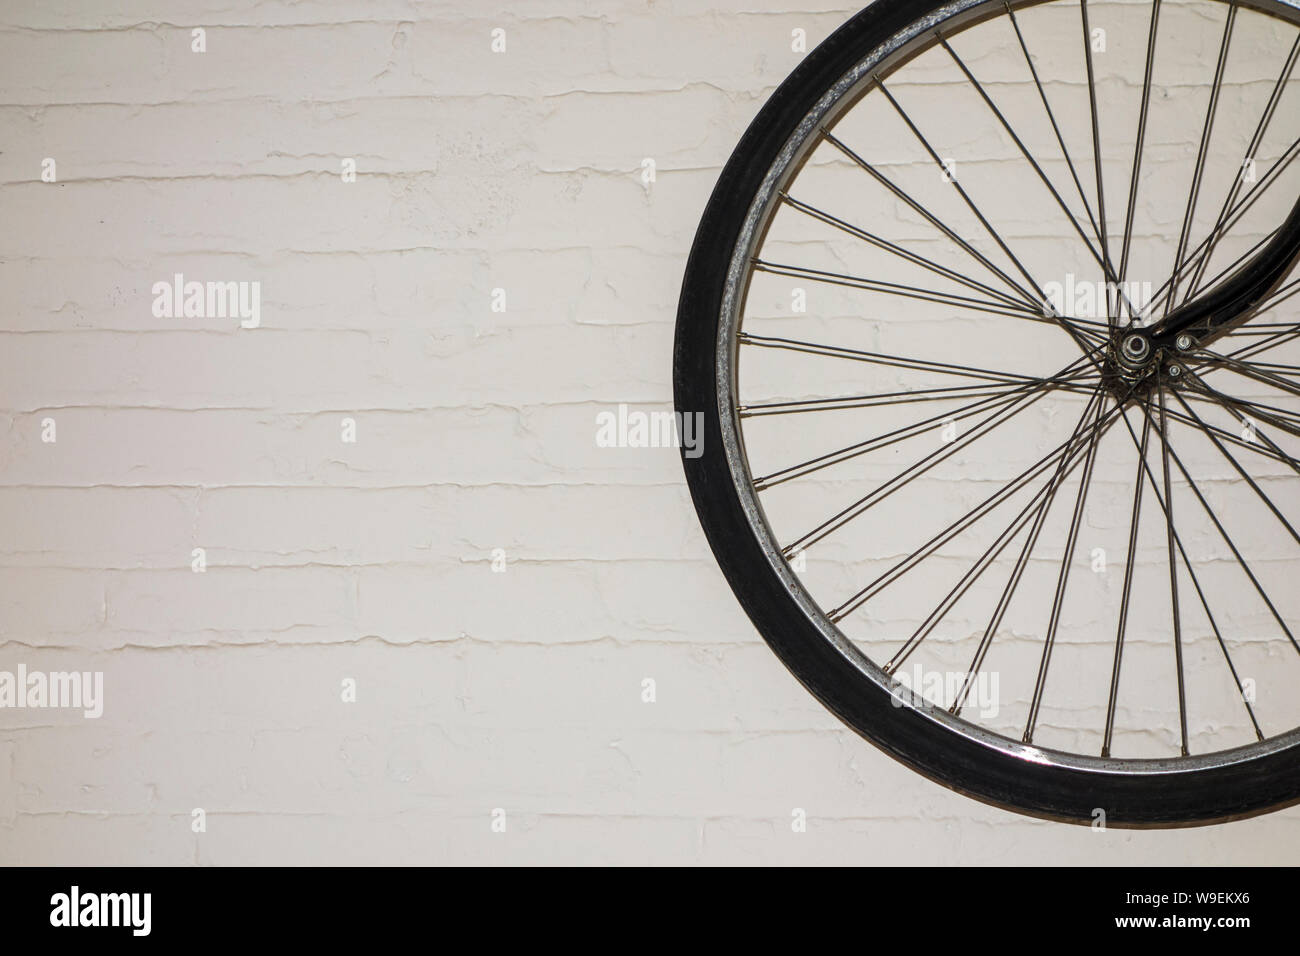 Roue de vélo noir contre blanc mur peint brique Banque D'Images